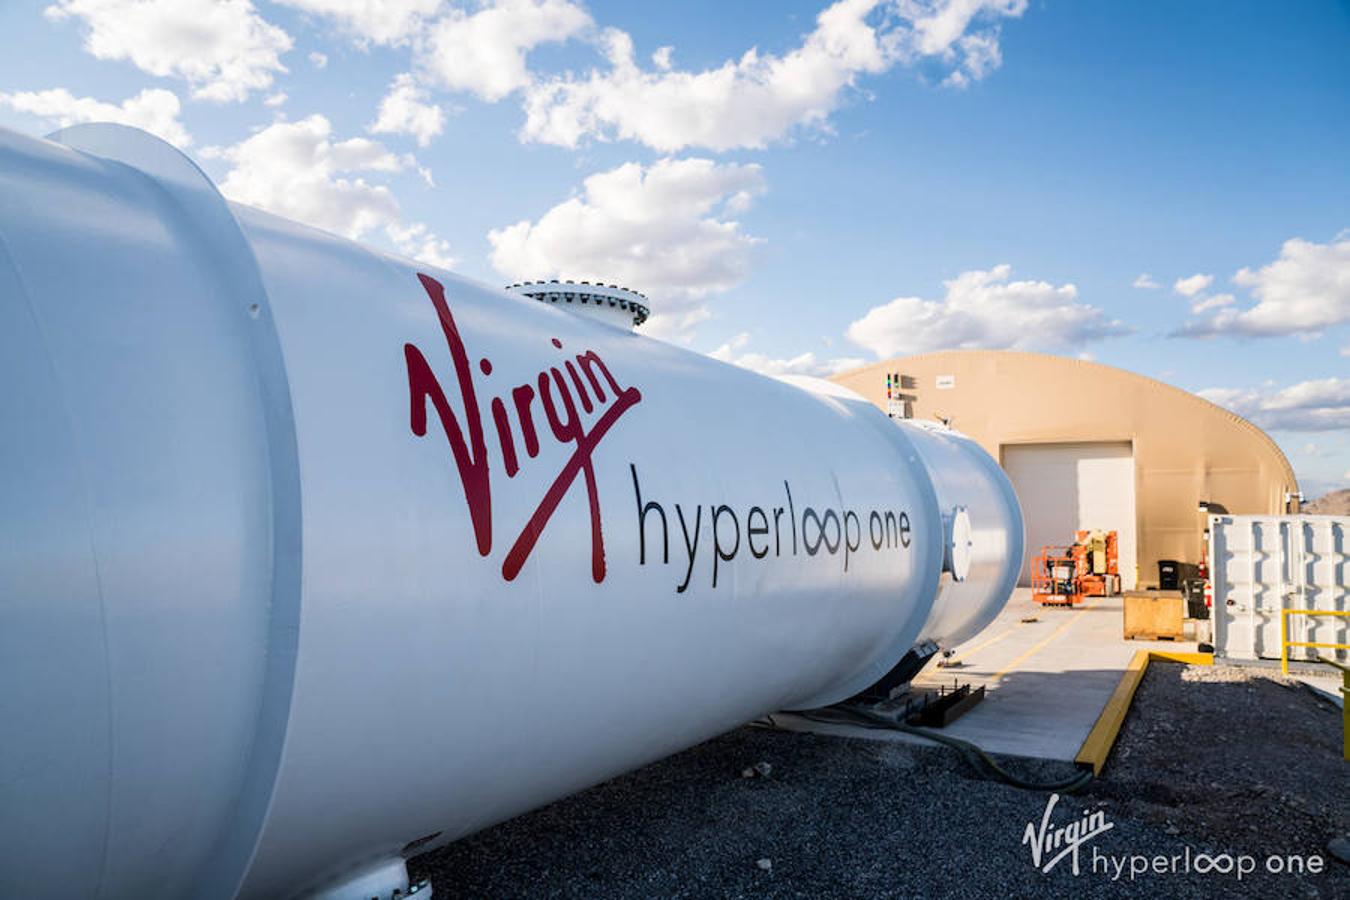 Según Adif, el desarrollo del Hyperloop conlleva innovación en materiales, sistemas de levitación magnética, seguridad en túneles, técnicas de electrónica, telecomunicaciones y telemática.